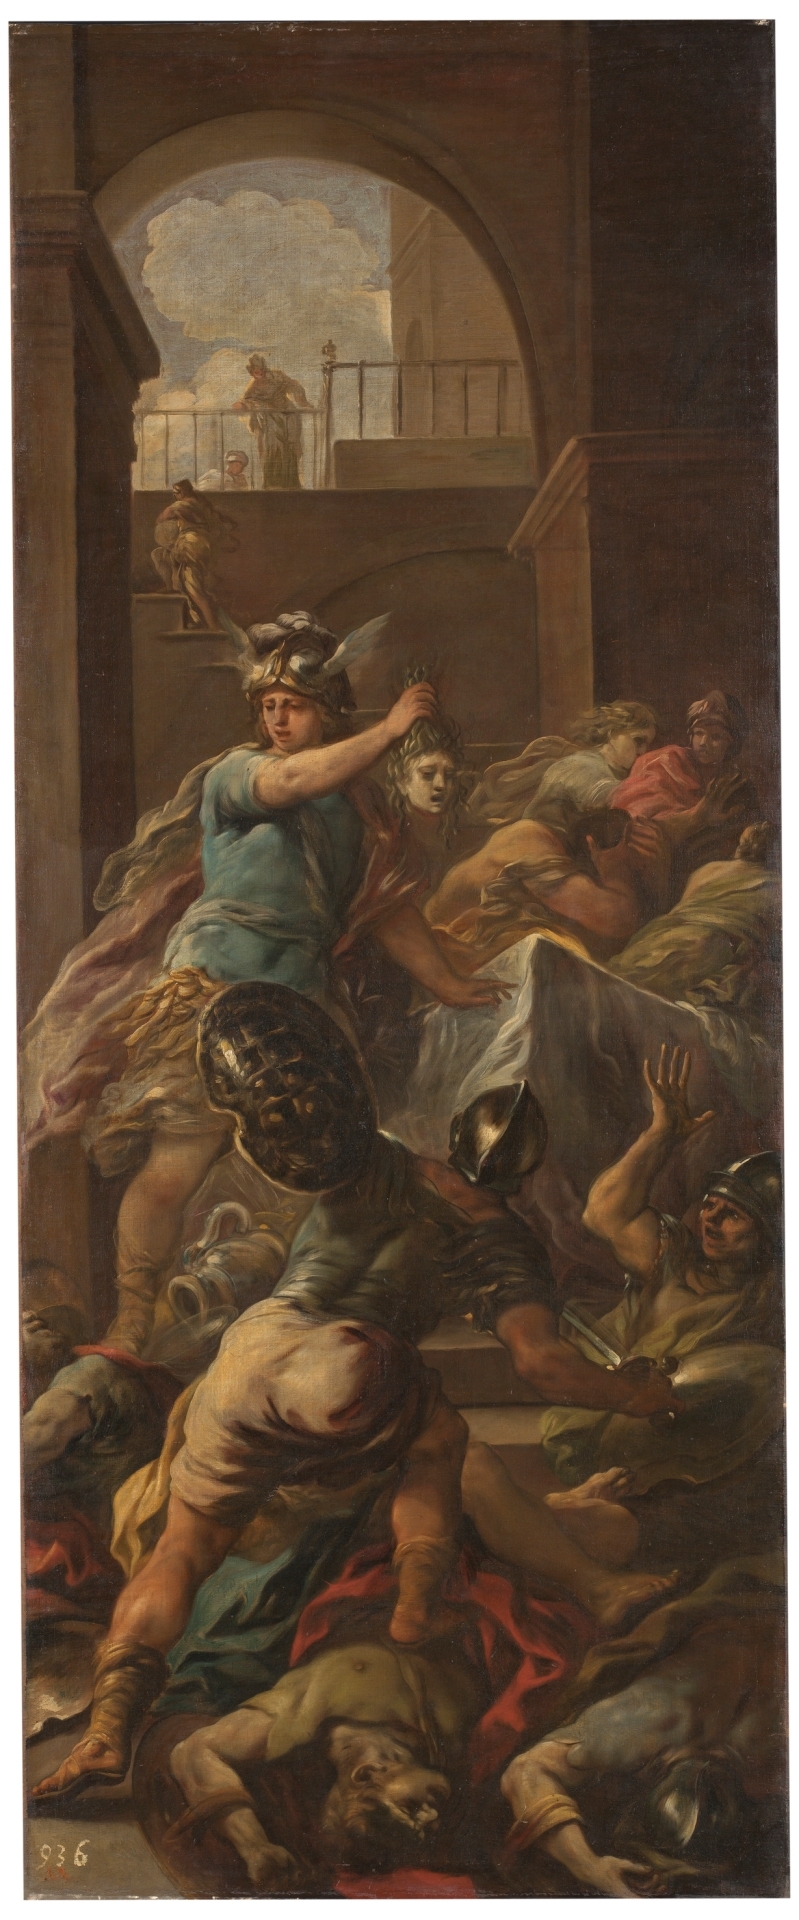 Perseo vencedor de Medusa. Giordano, 1699 - 1702. Museo del Prado.